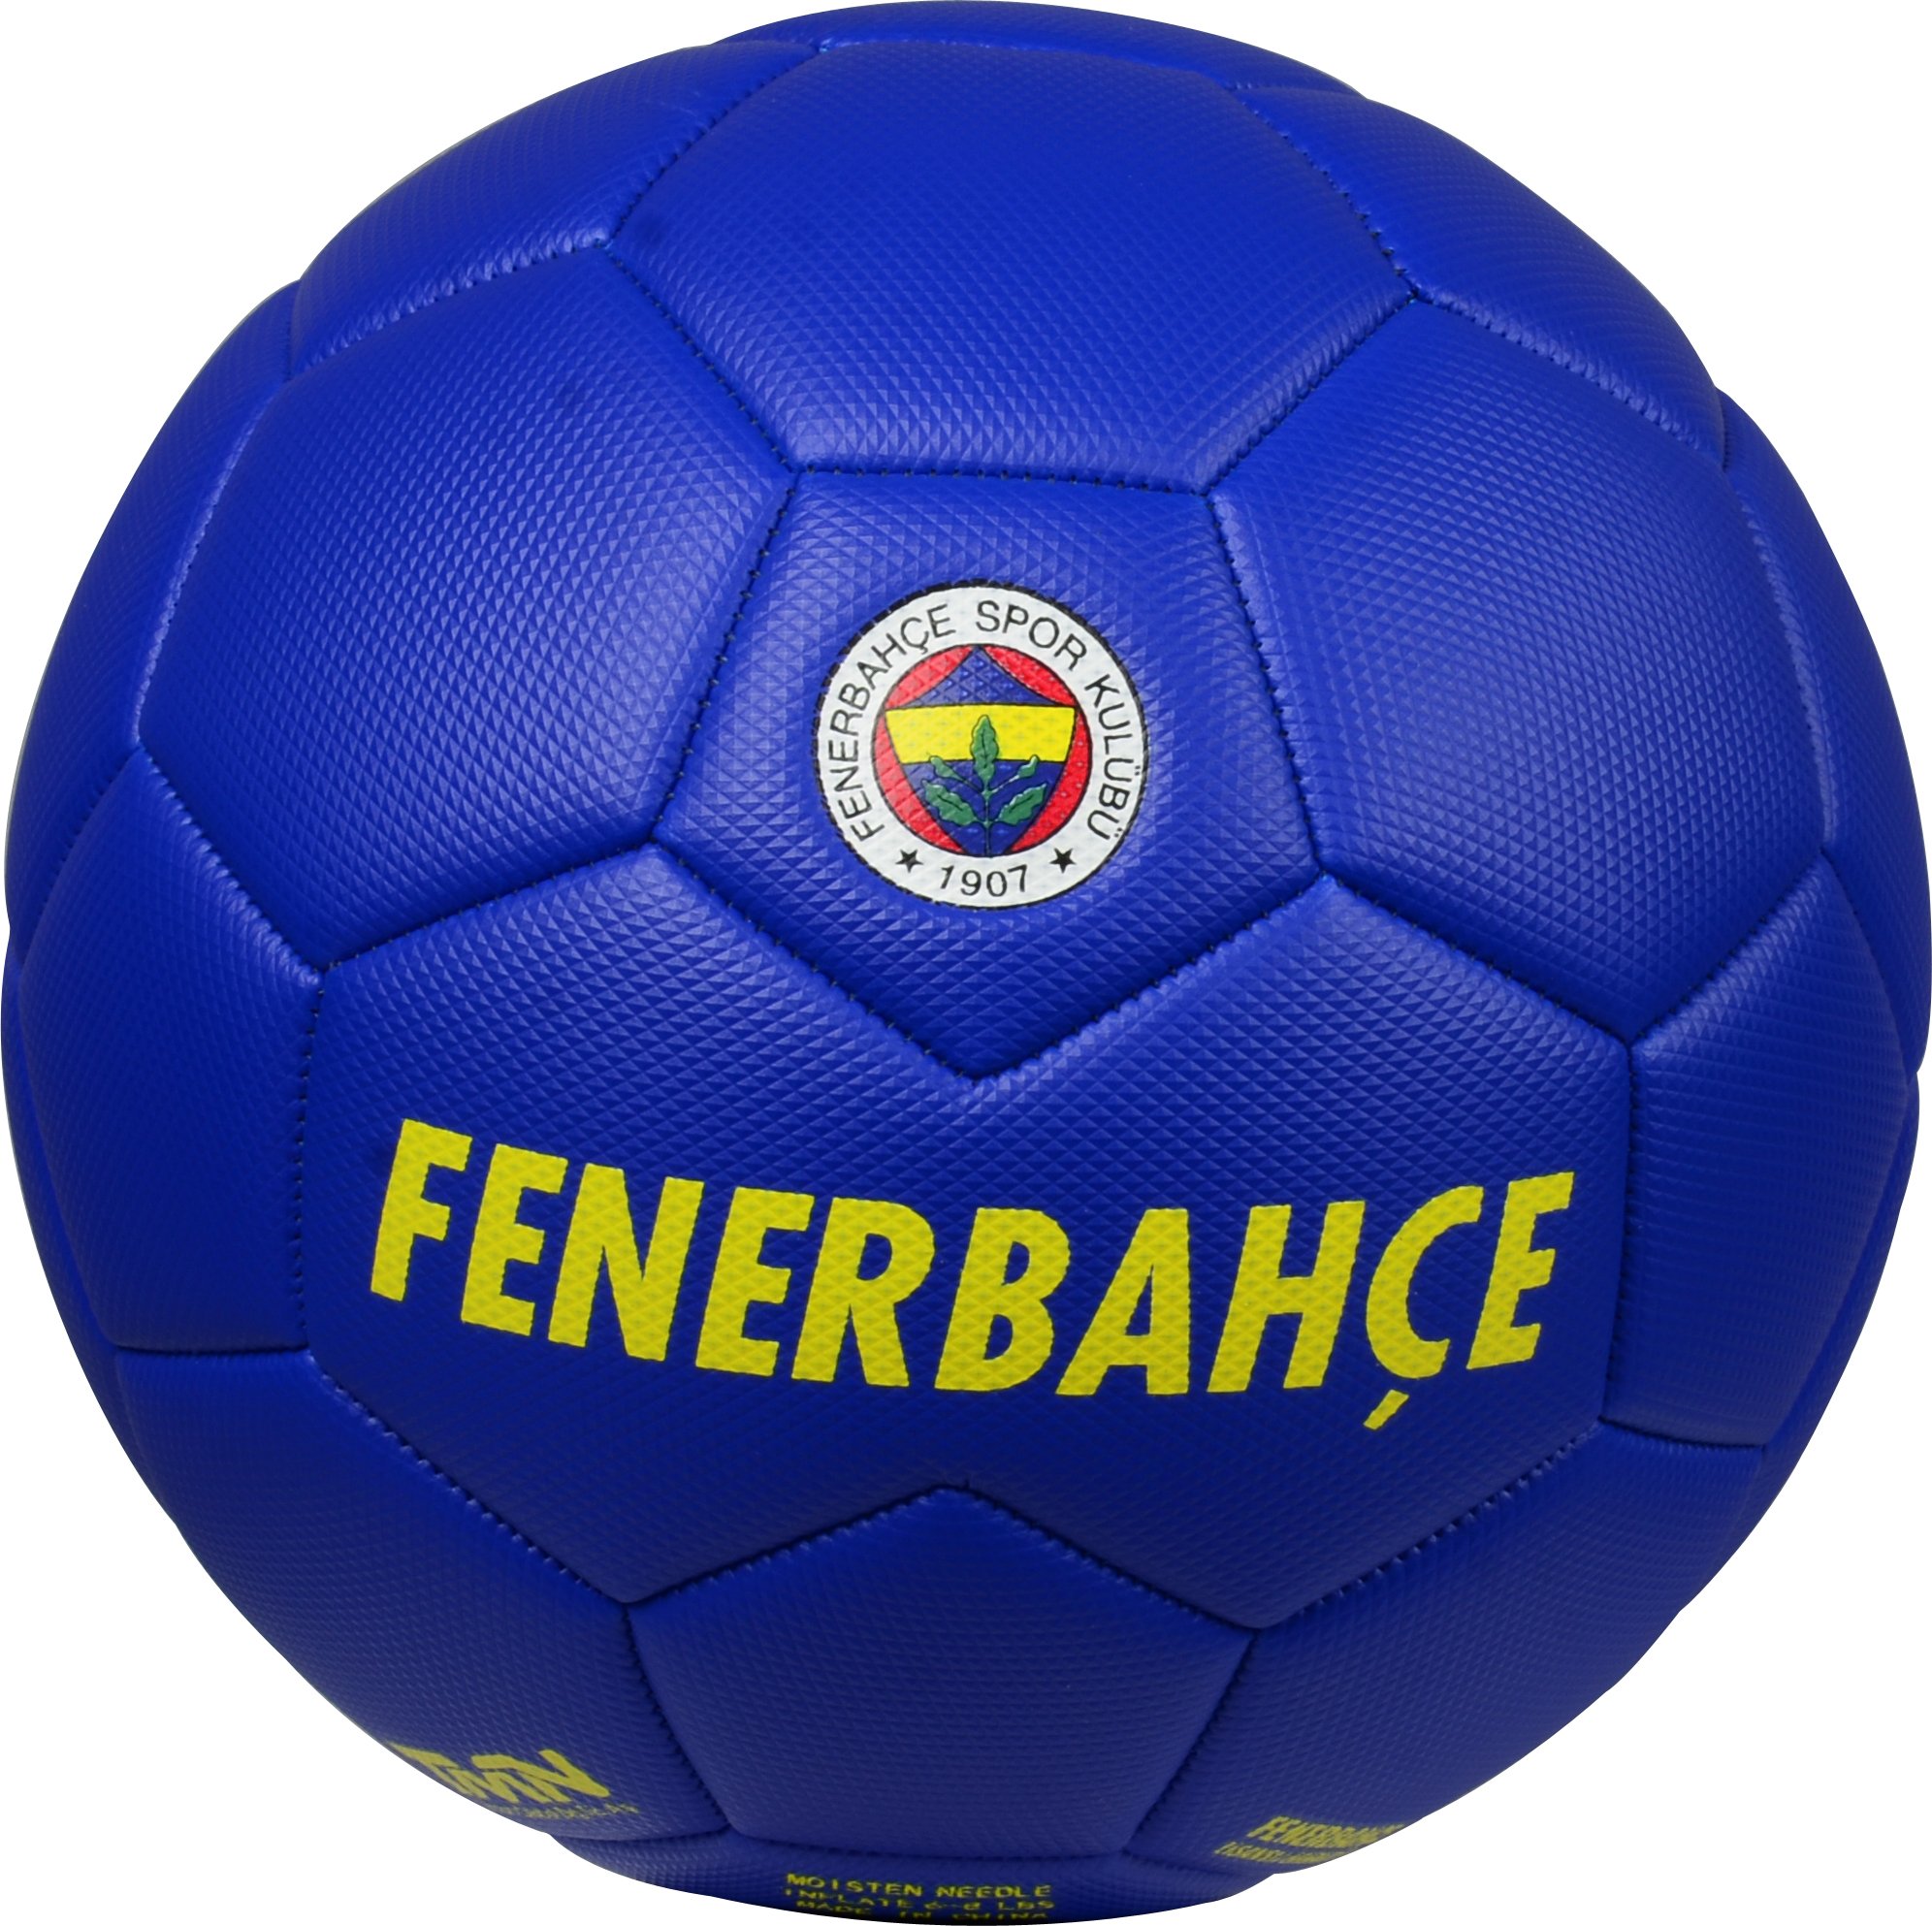 Fenerbahçe Orjinal Lisanslı Futbol Topu - Lacivert